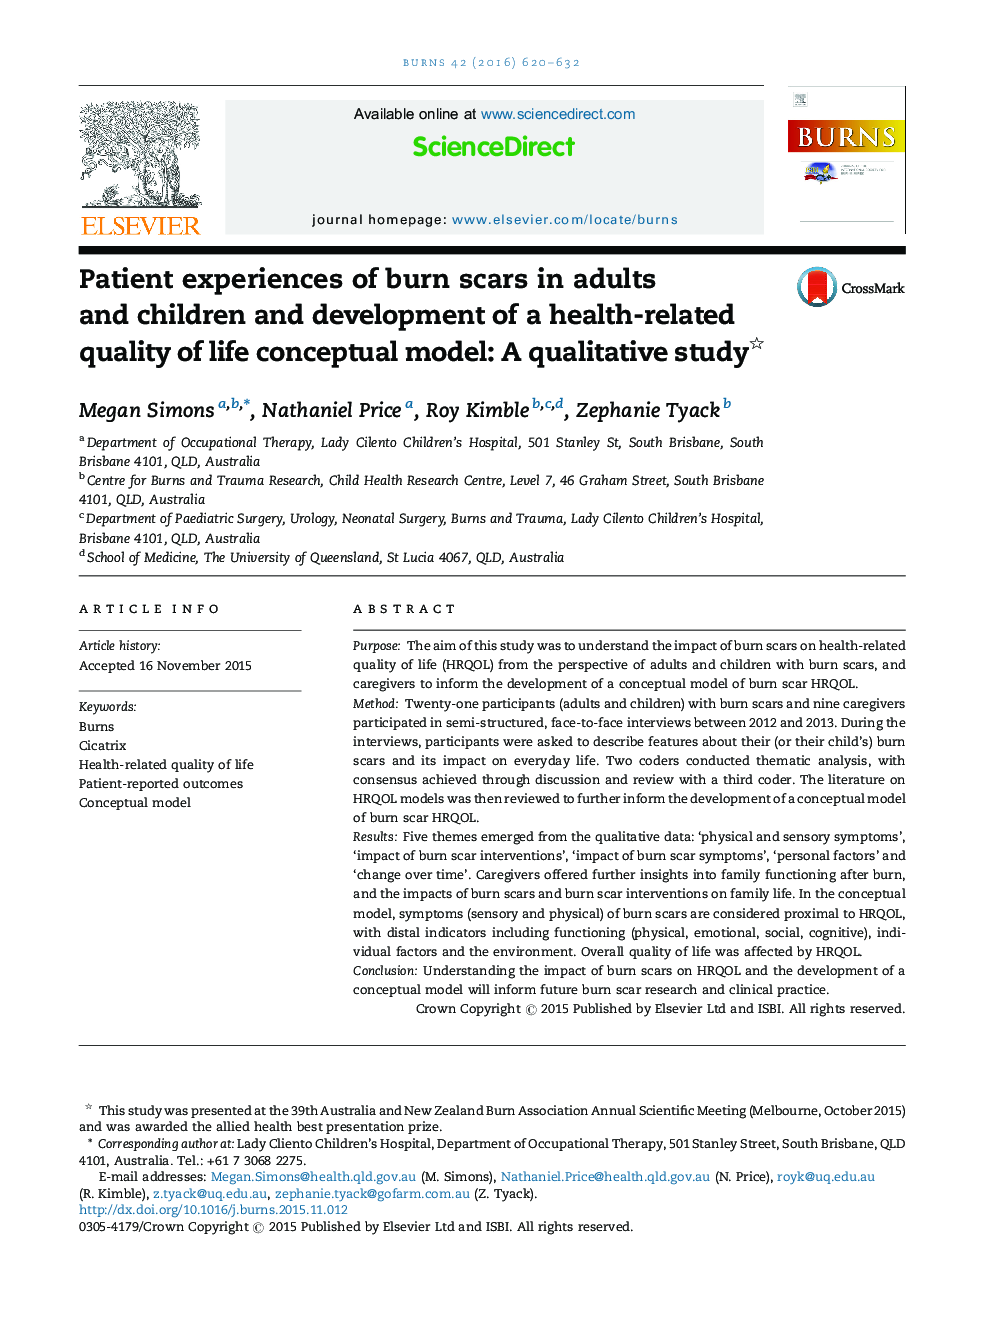 تجربه بیمار از زخم سوختگی در بزرگسالان و کودکان و توسعه یک مدل مفهومی کیفیت زندگی مرتبط با سلامت: یک مطالعه کیفی